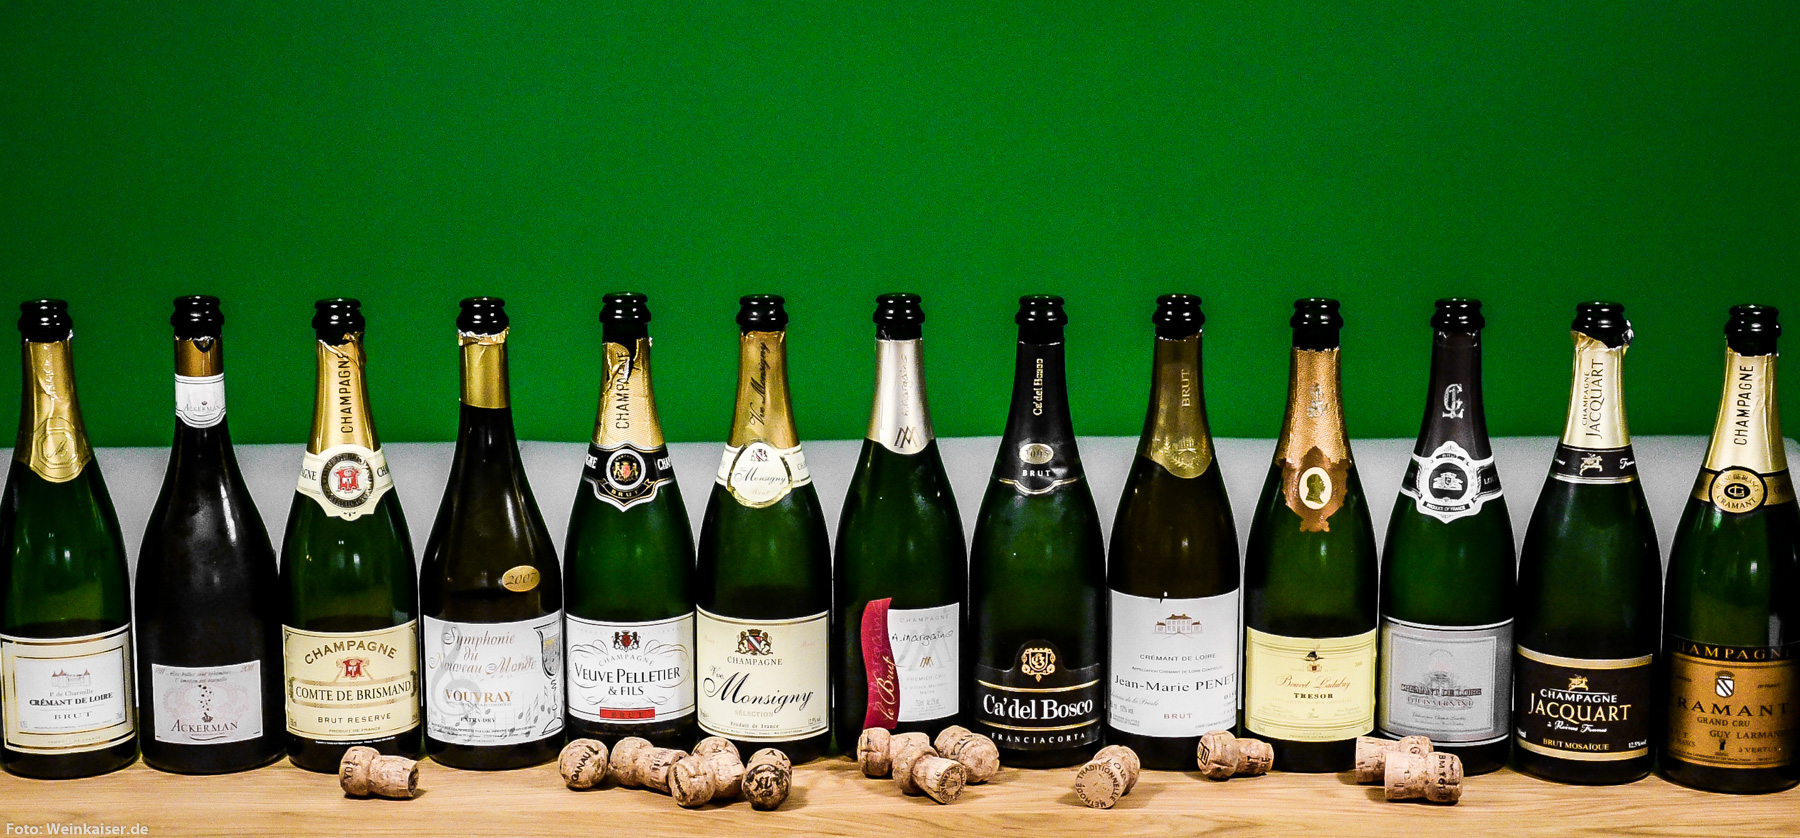 Stiftung Warentest macht ALDI PR für Billig-Champagner